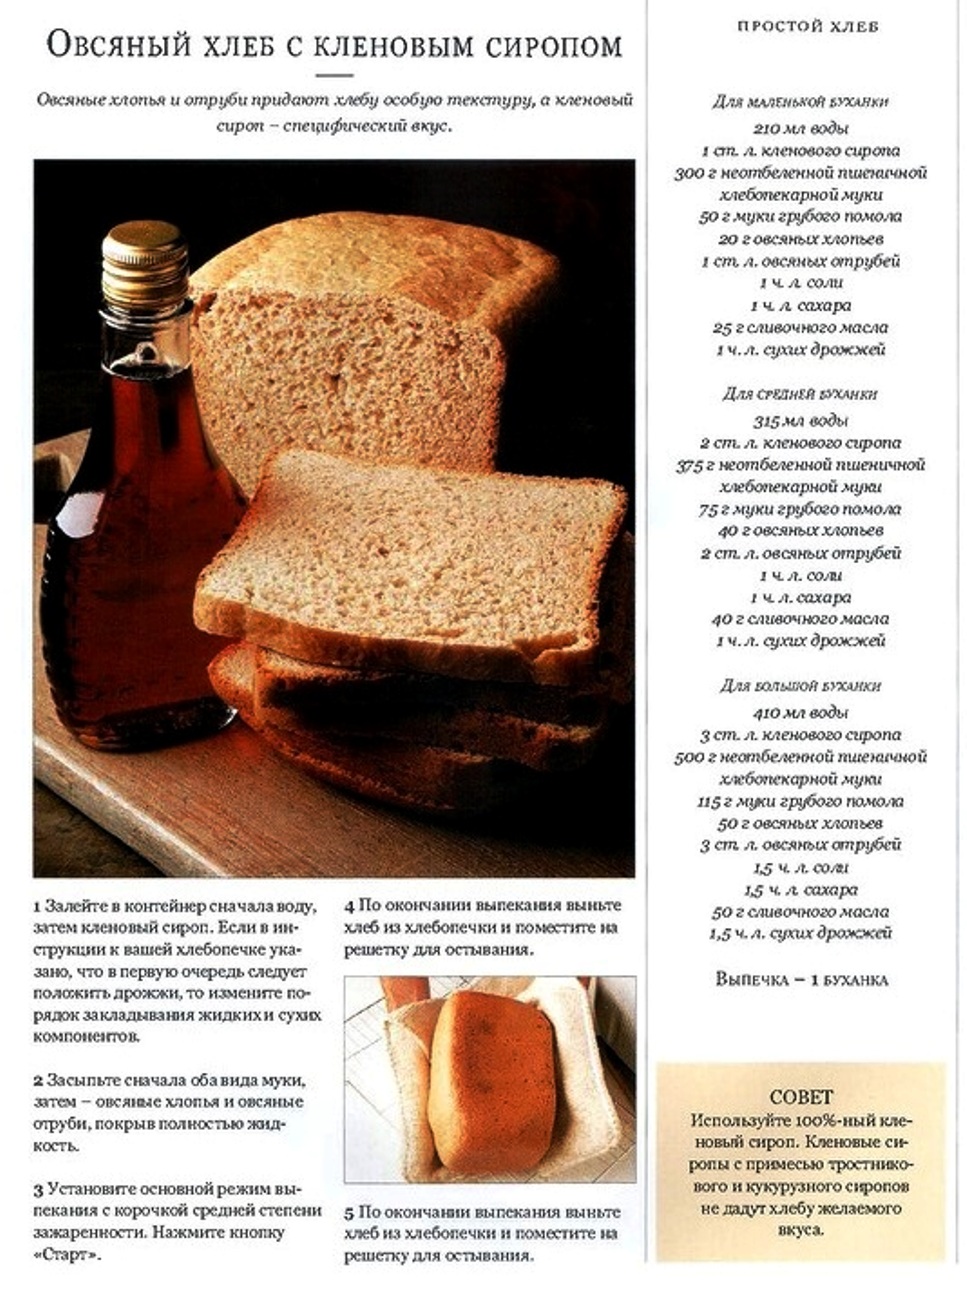 Ржаной хлеб без дрожжей в хлебопечке рецепт. Выпечка хлеба в хлебопечке-рецепты. Выпечка в хлебопечке рецепты. Рецепт хлебобулочных изделий. Рецепты хлеба для хлебопечки.